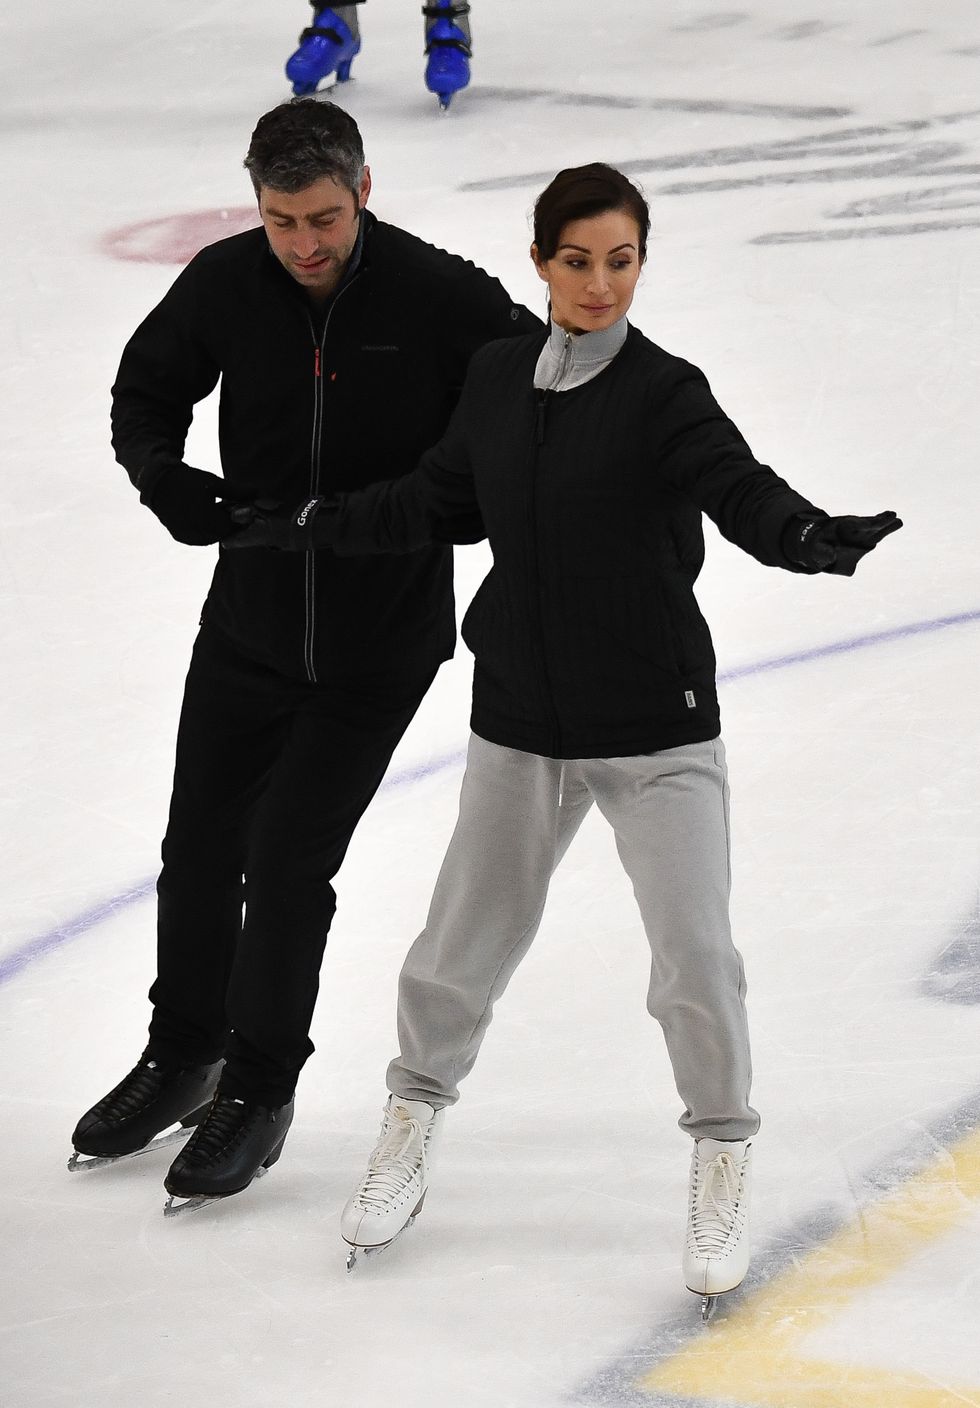 Roxy Shahidi trainiert zum Tanzen auf dem Eis